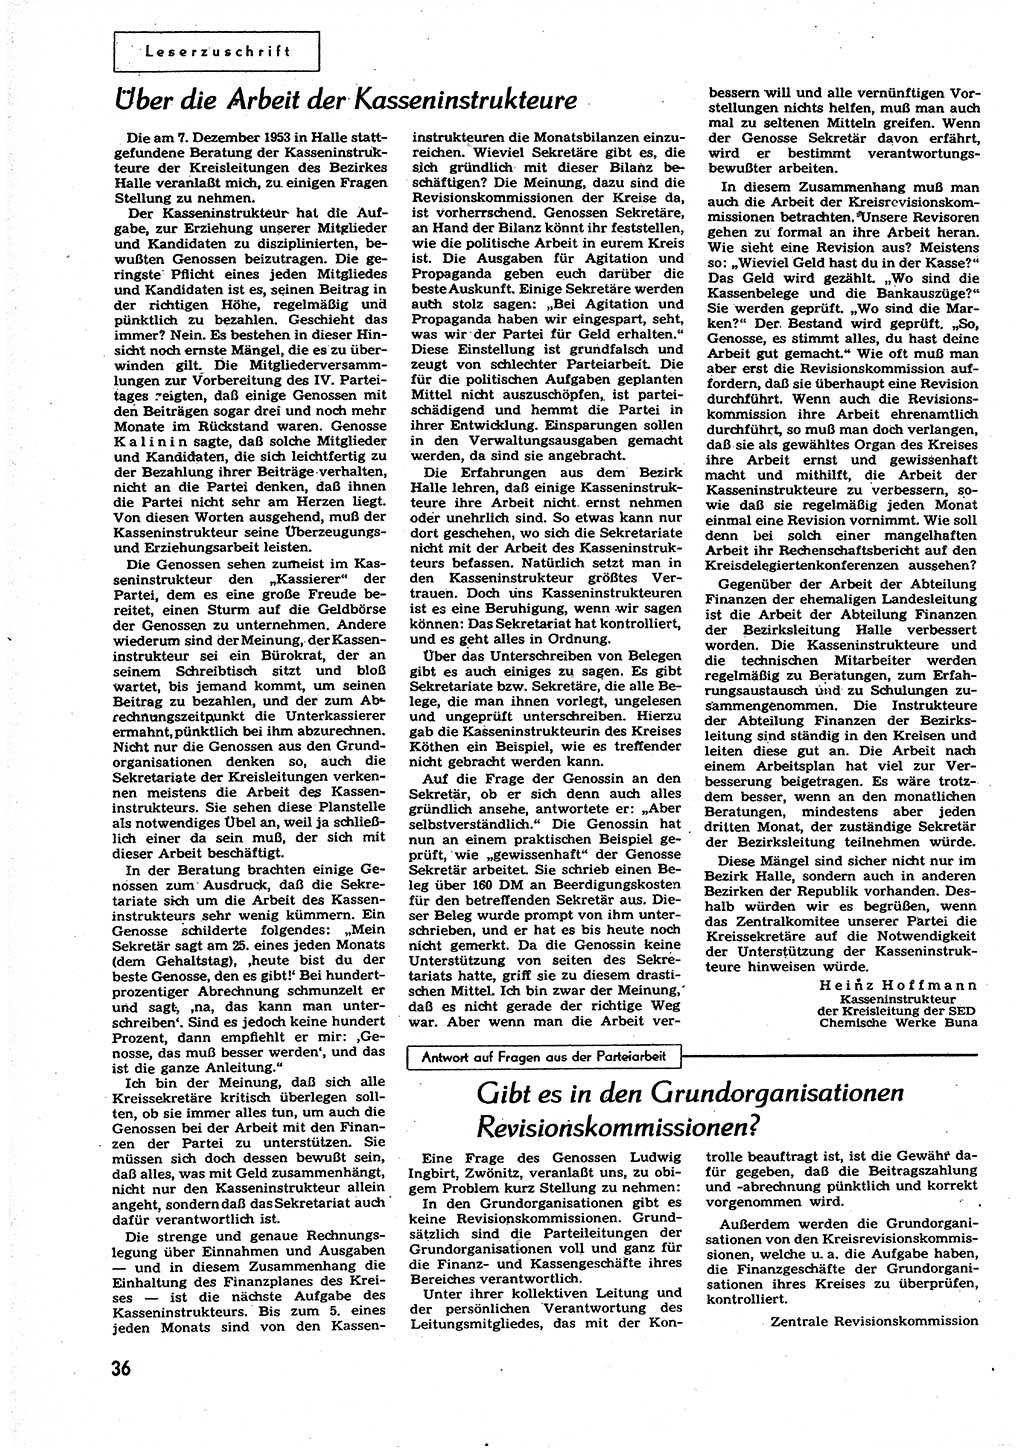 Neuer Weg (NW), Organ des Zentralkomitees (ZK) der SED (Sozialistische Einheitspartei Deutschlands) für alle Parteiarbeiter, 9. Jahrgang [Deutsche Demokratische Republik (DDR)] 1954, Heft 5/36 (NW ZK SED DDR 1954, H. 5/36)